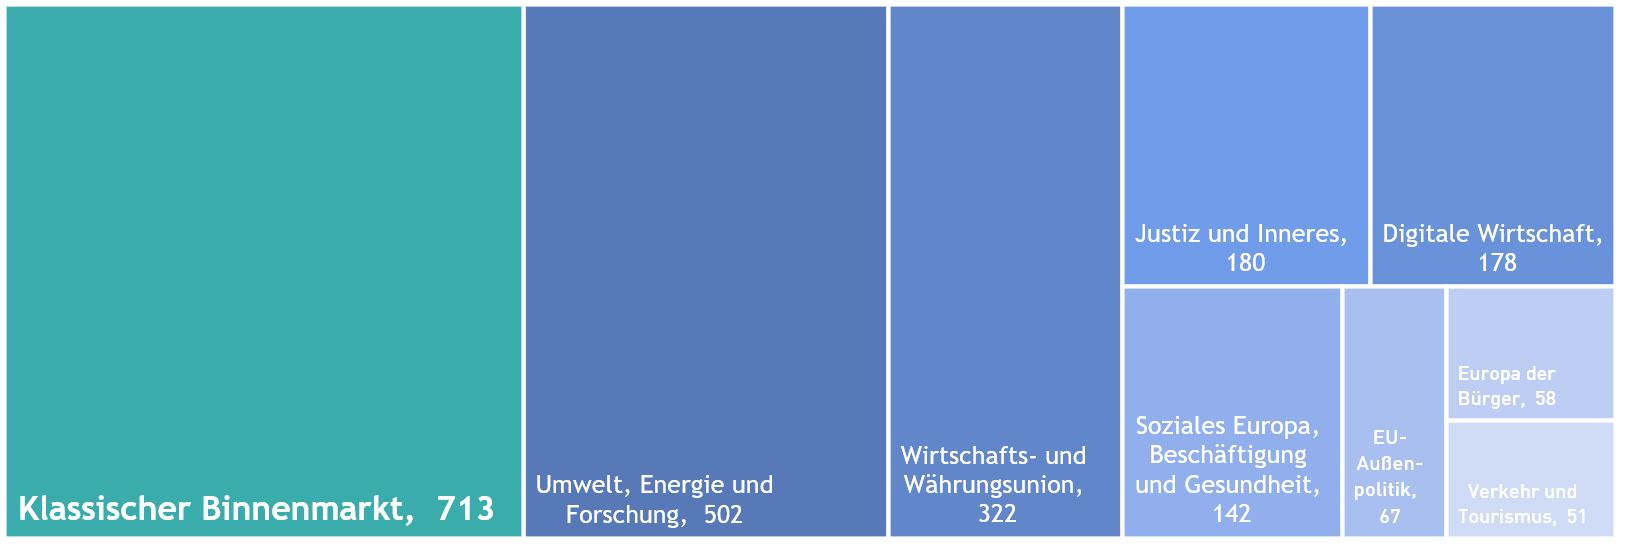 In verschiedenen blauen Farbrechtecken gestaltete Grafik zum Wirtschaftsstandort Europa, in einzelnen Kacheln verschiedene Themen wie klassischer Binnenmarkt, Umwelt Energie und Forschung und weiteres